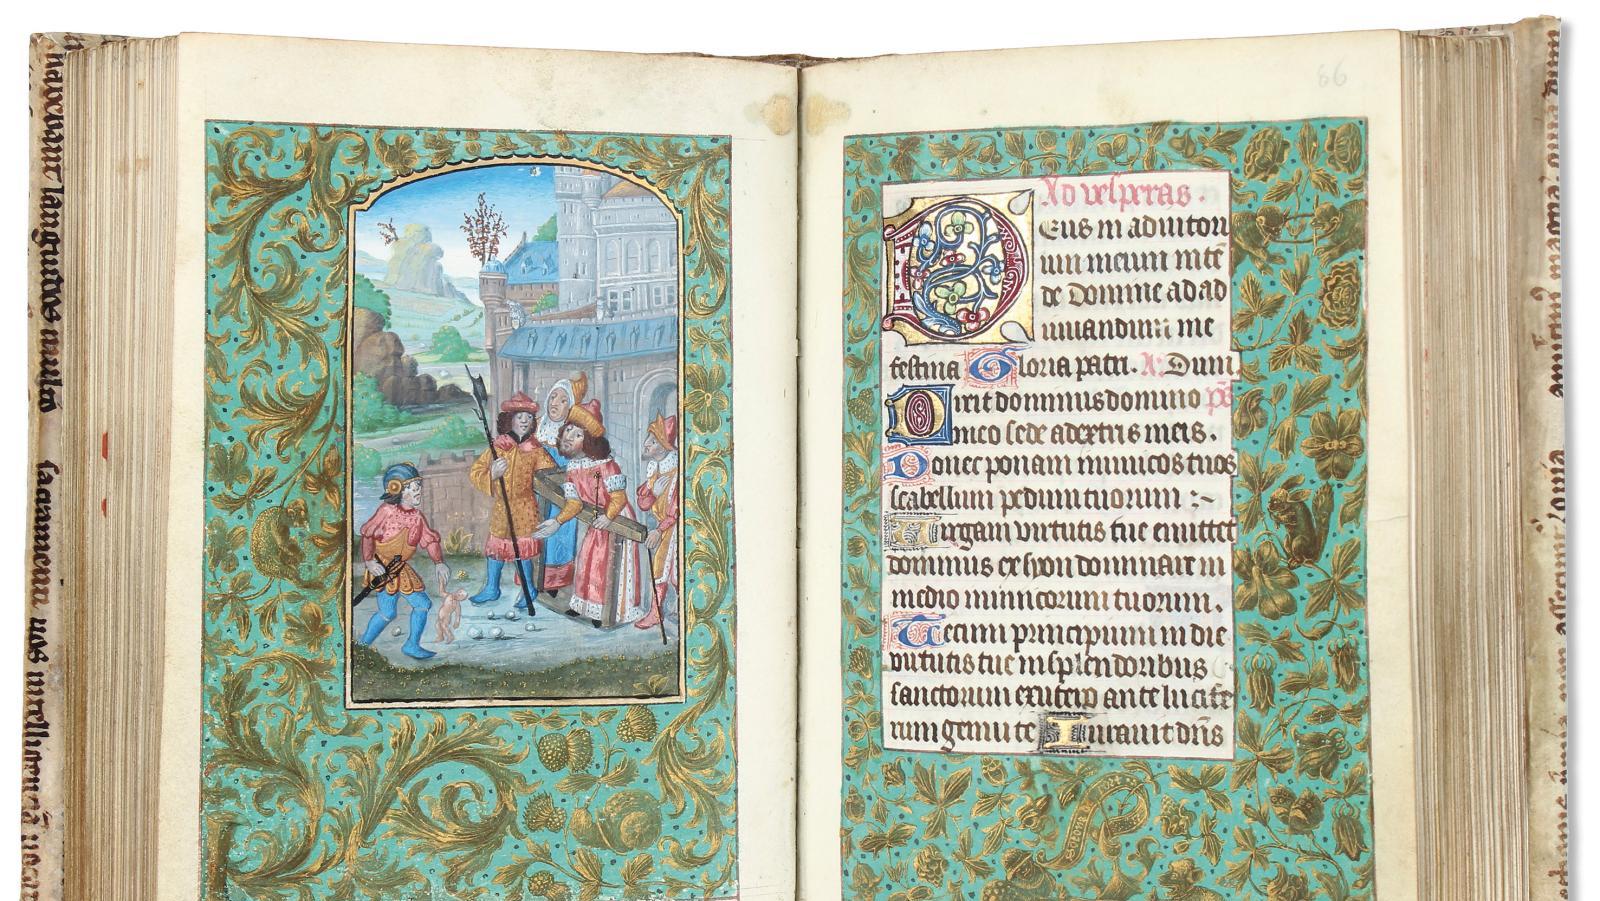 Hartmann Schedel (1440-1514), Liber chronicarum, première édition en latin imprimée... La Chronique de Nuremberg, en édition originale